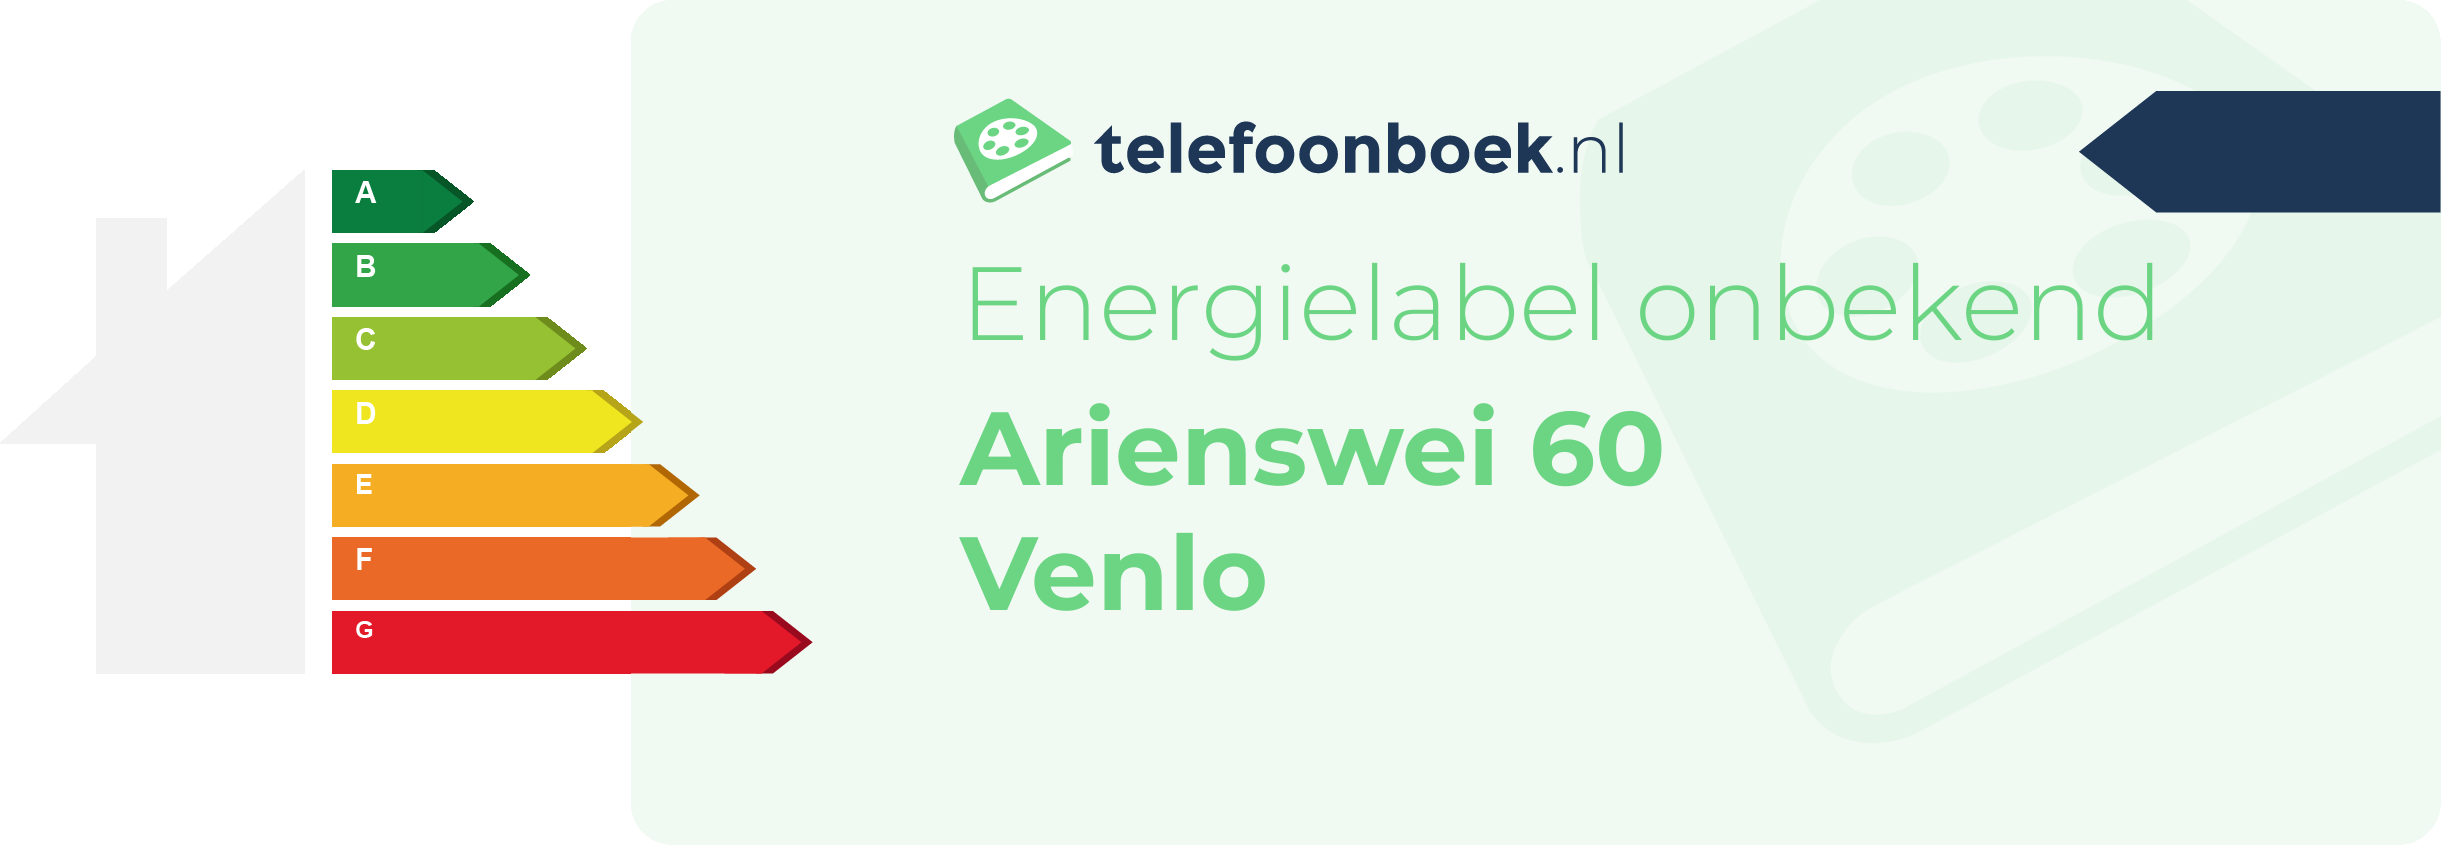 Energielabel Arienswei 60 Venlo